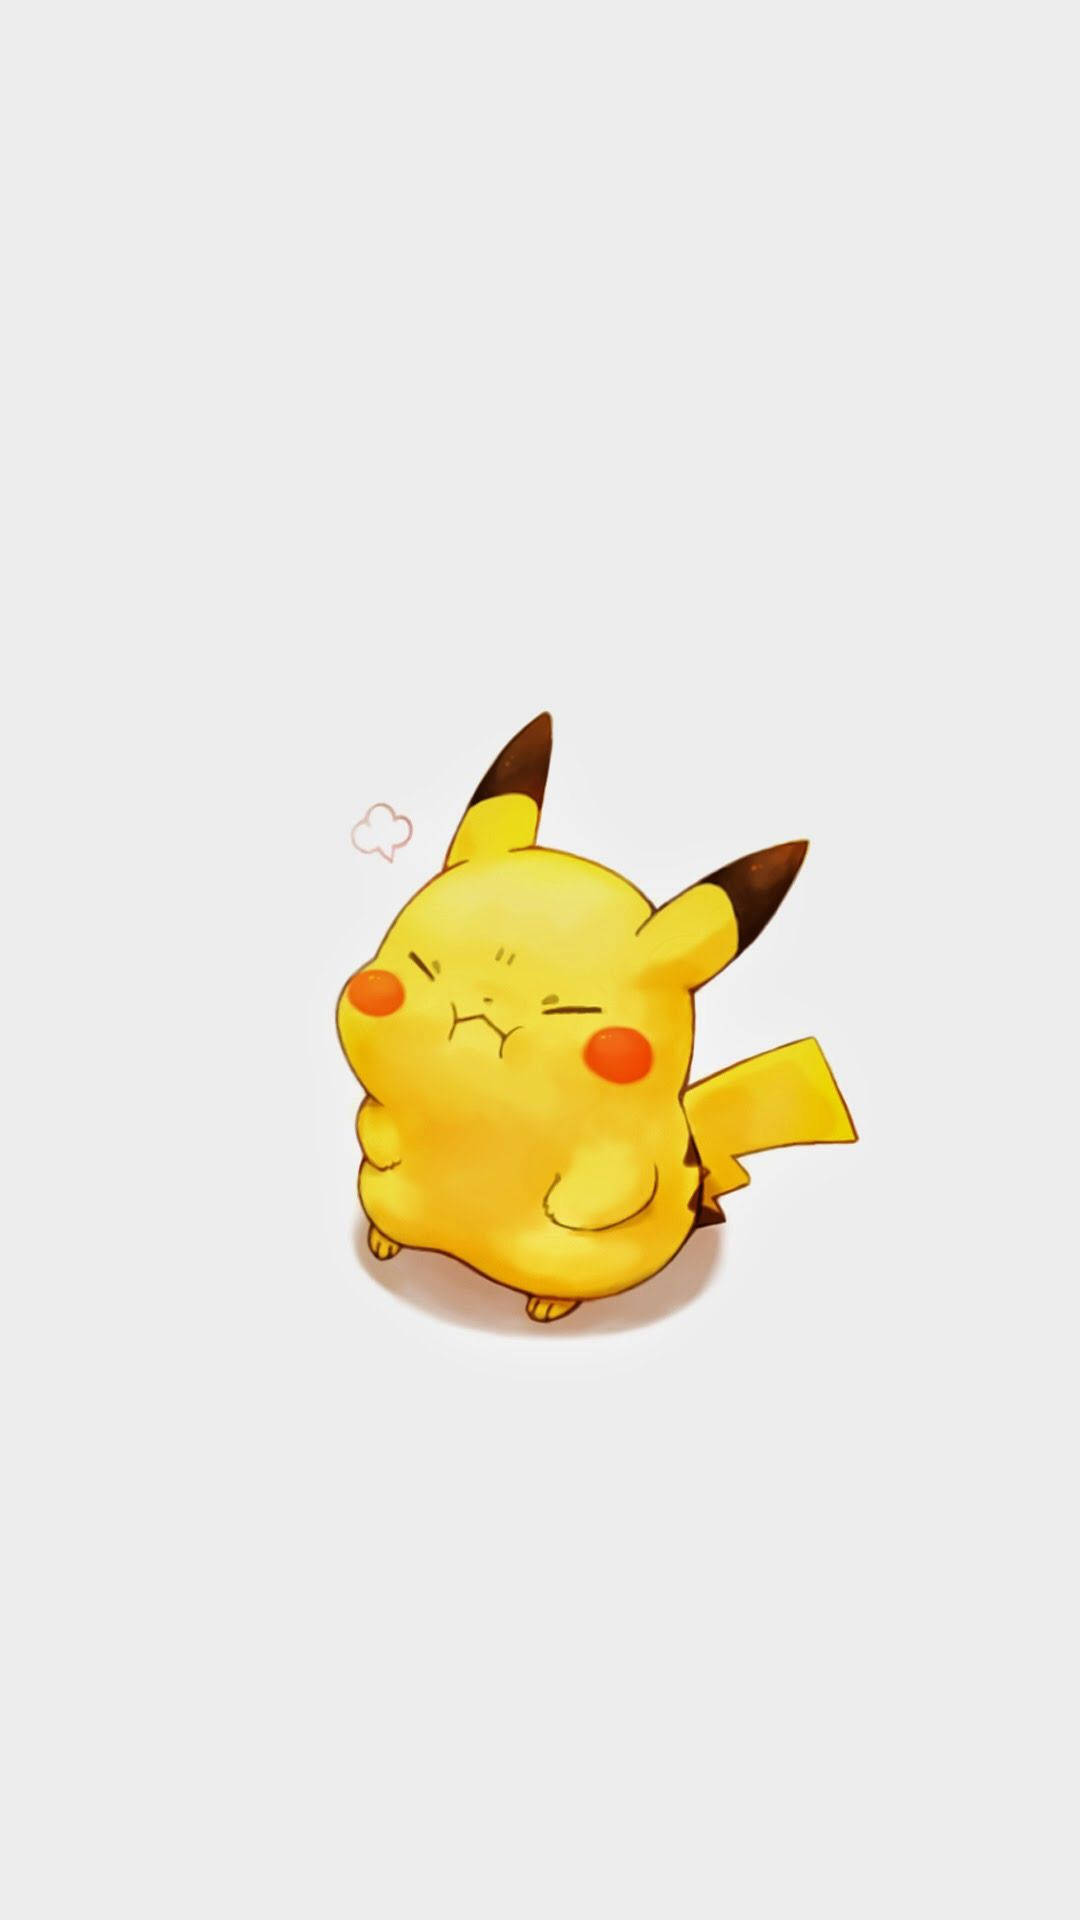 Cute Pikachu Cartoon IPhone Wallpaper